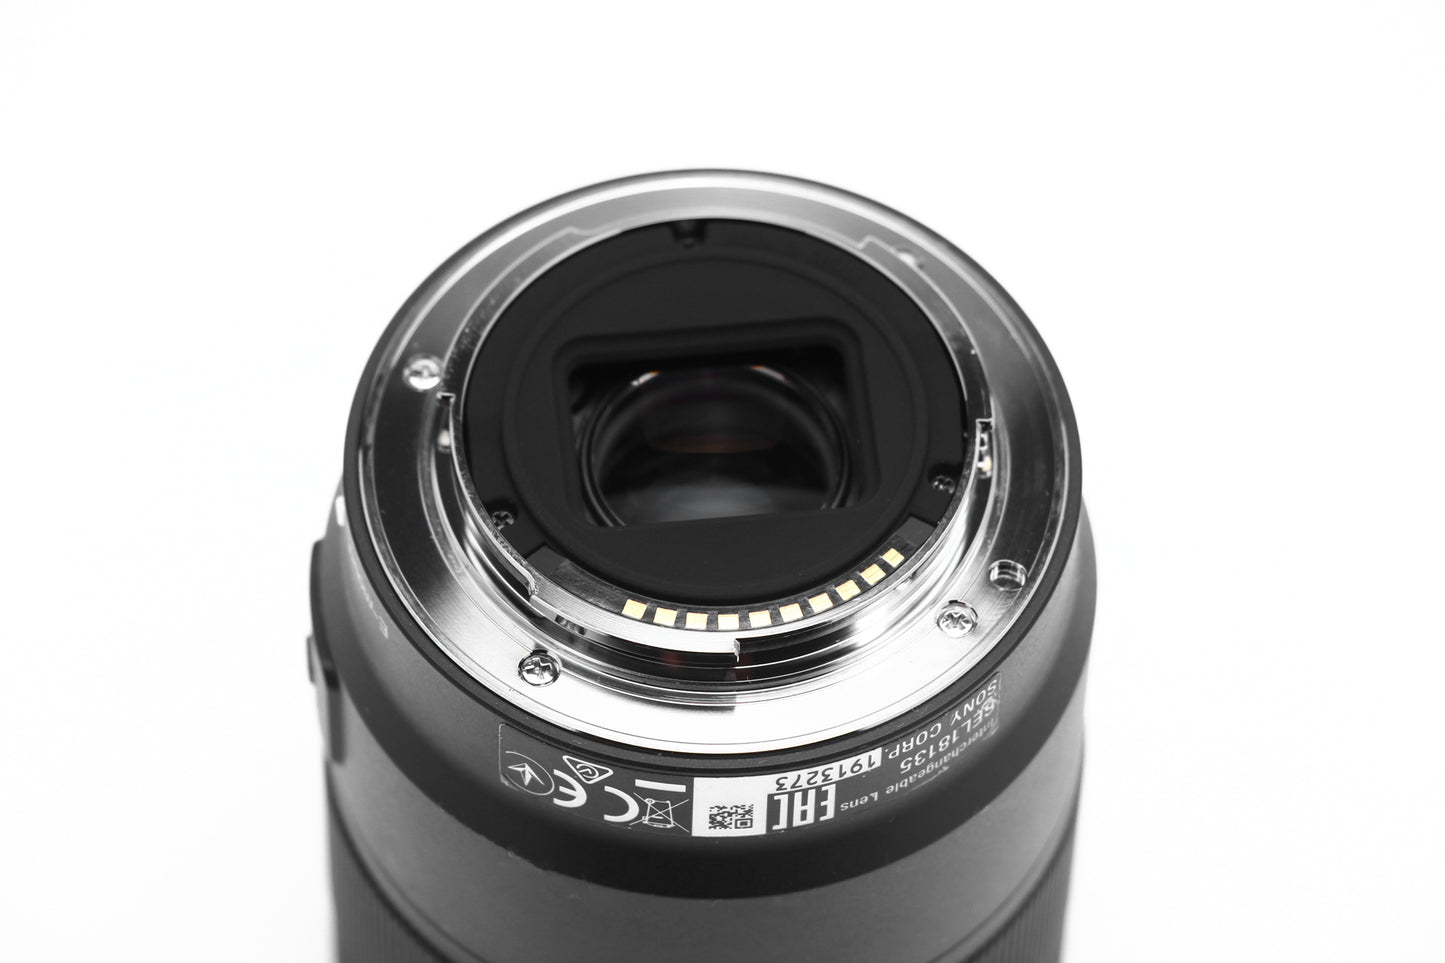 Used Sony E 18-135mm OSS Lens